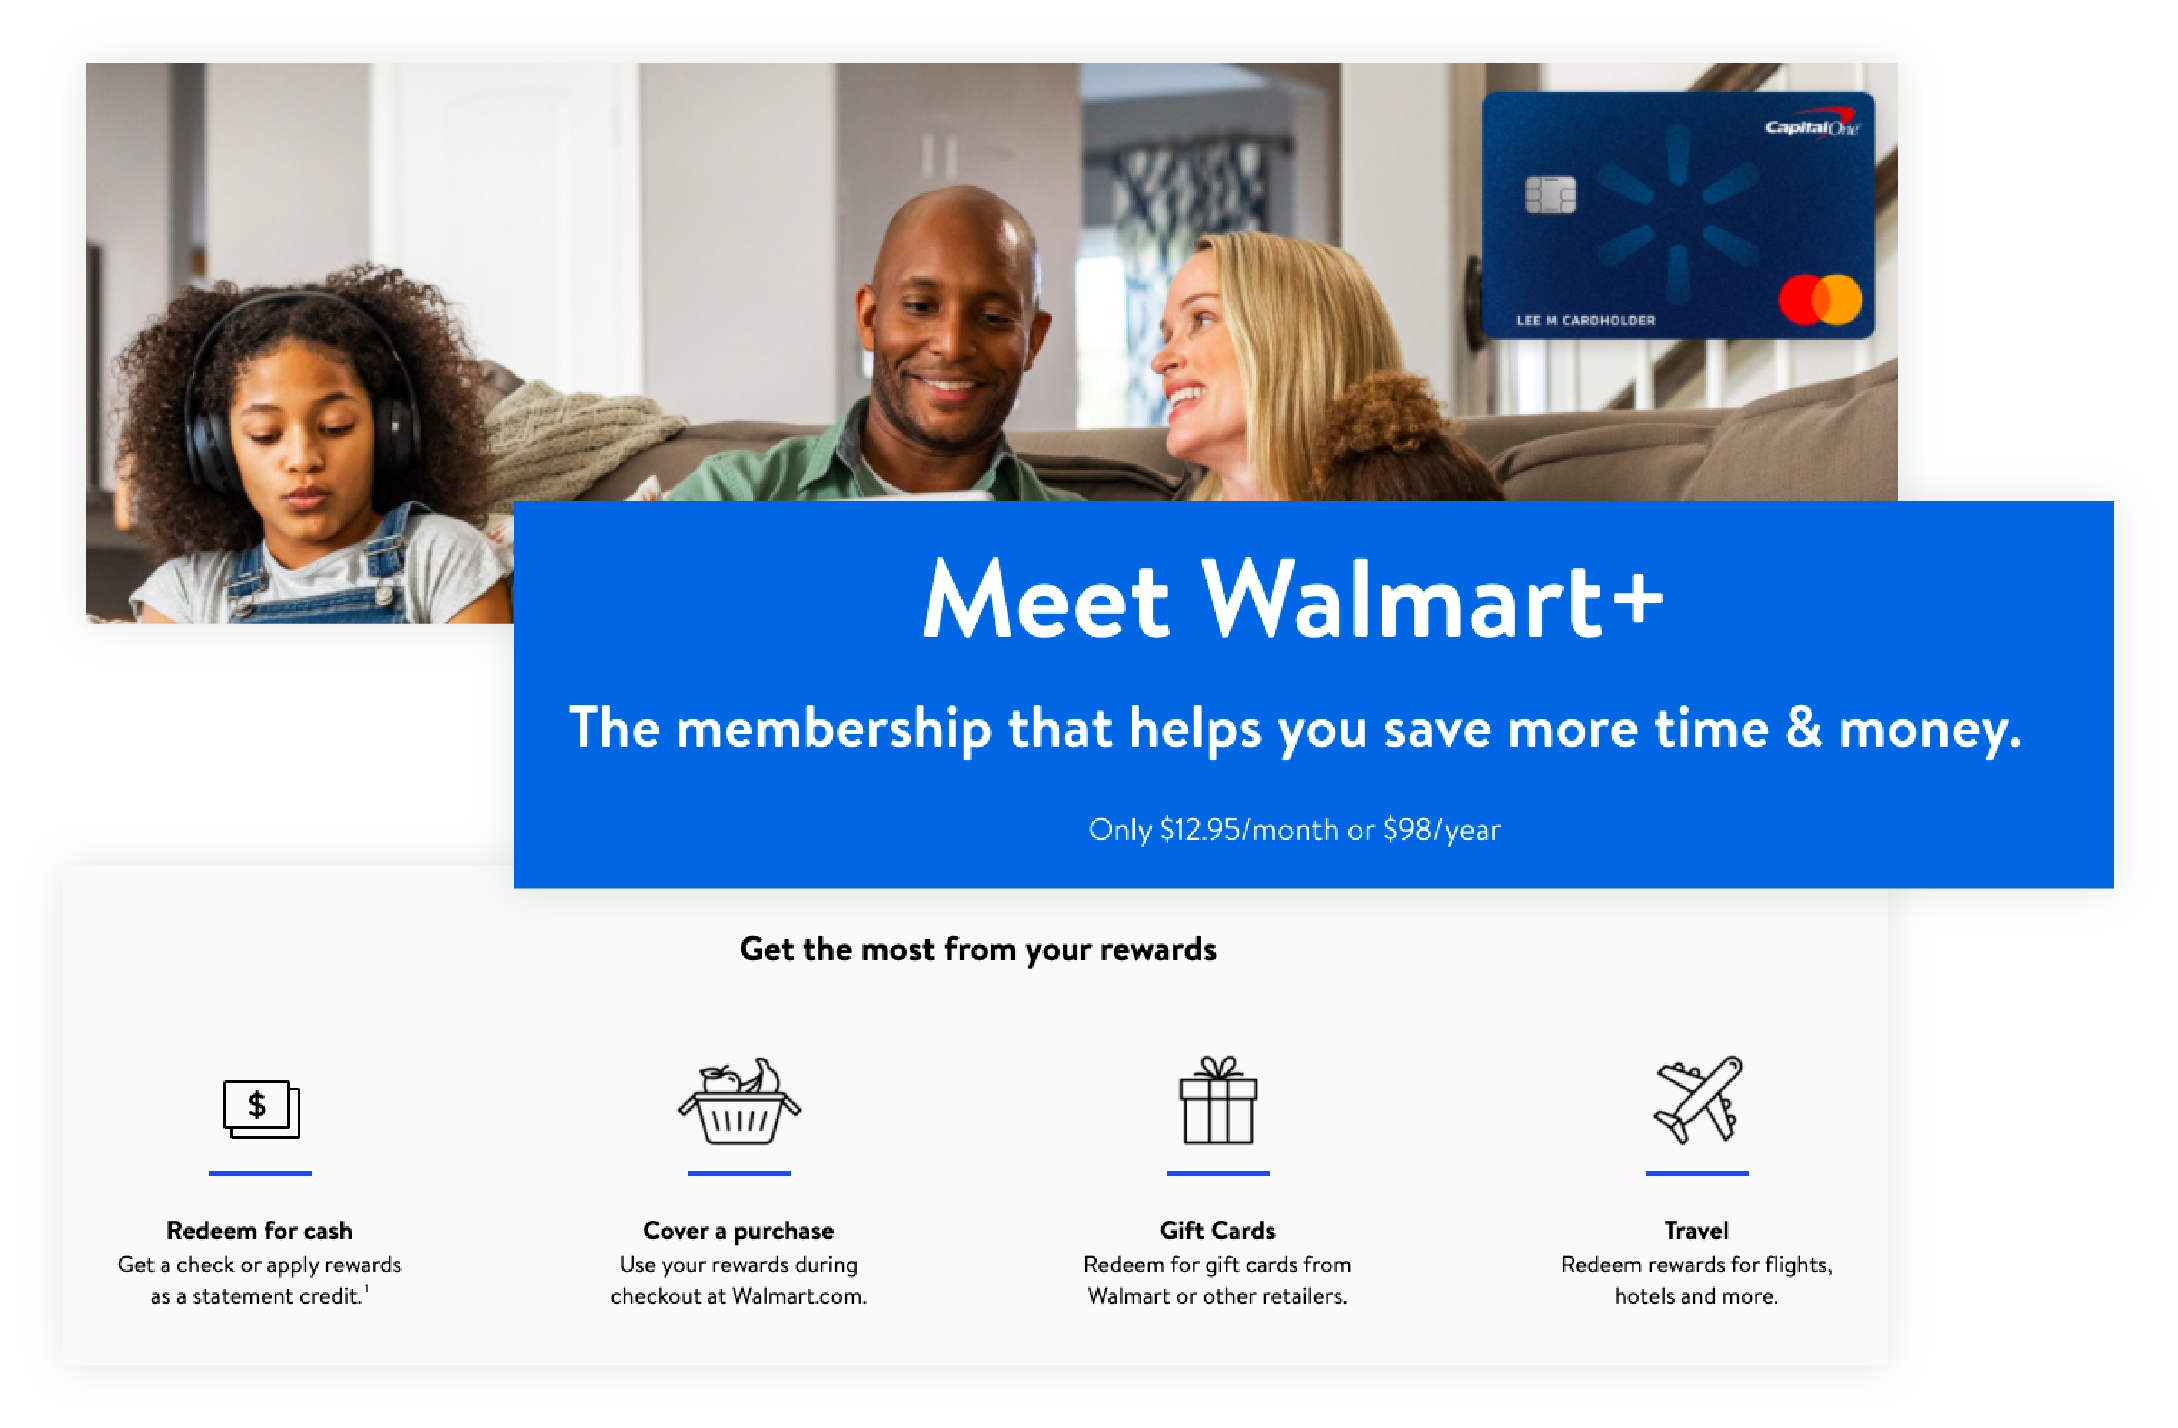 Visão geral dos benefícios para membros do programa de recompensas do Walmart+